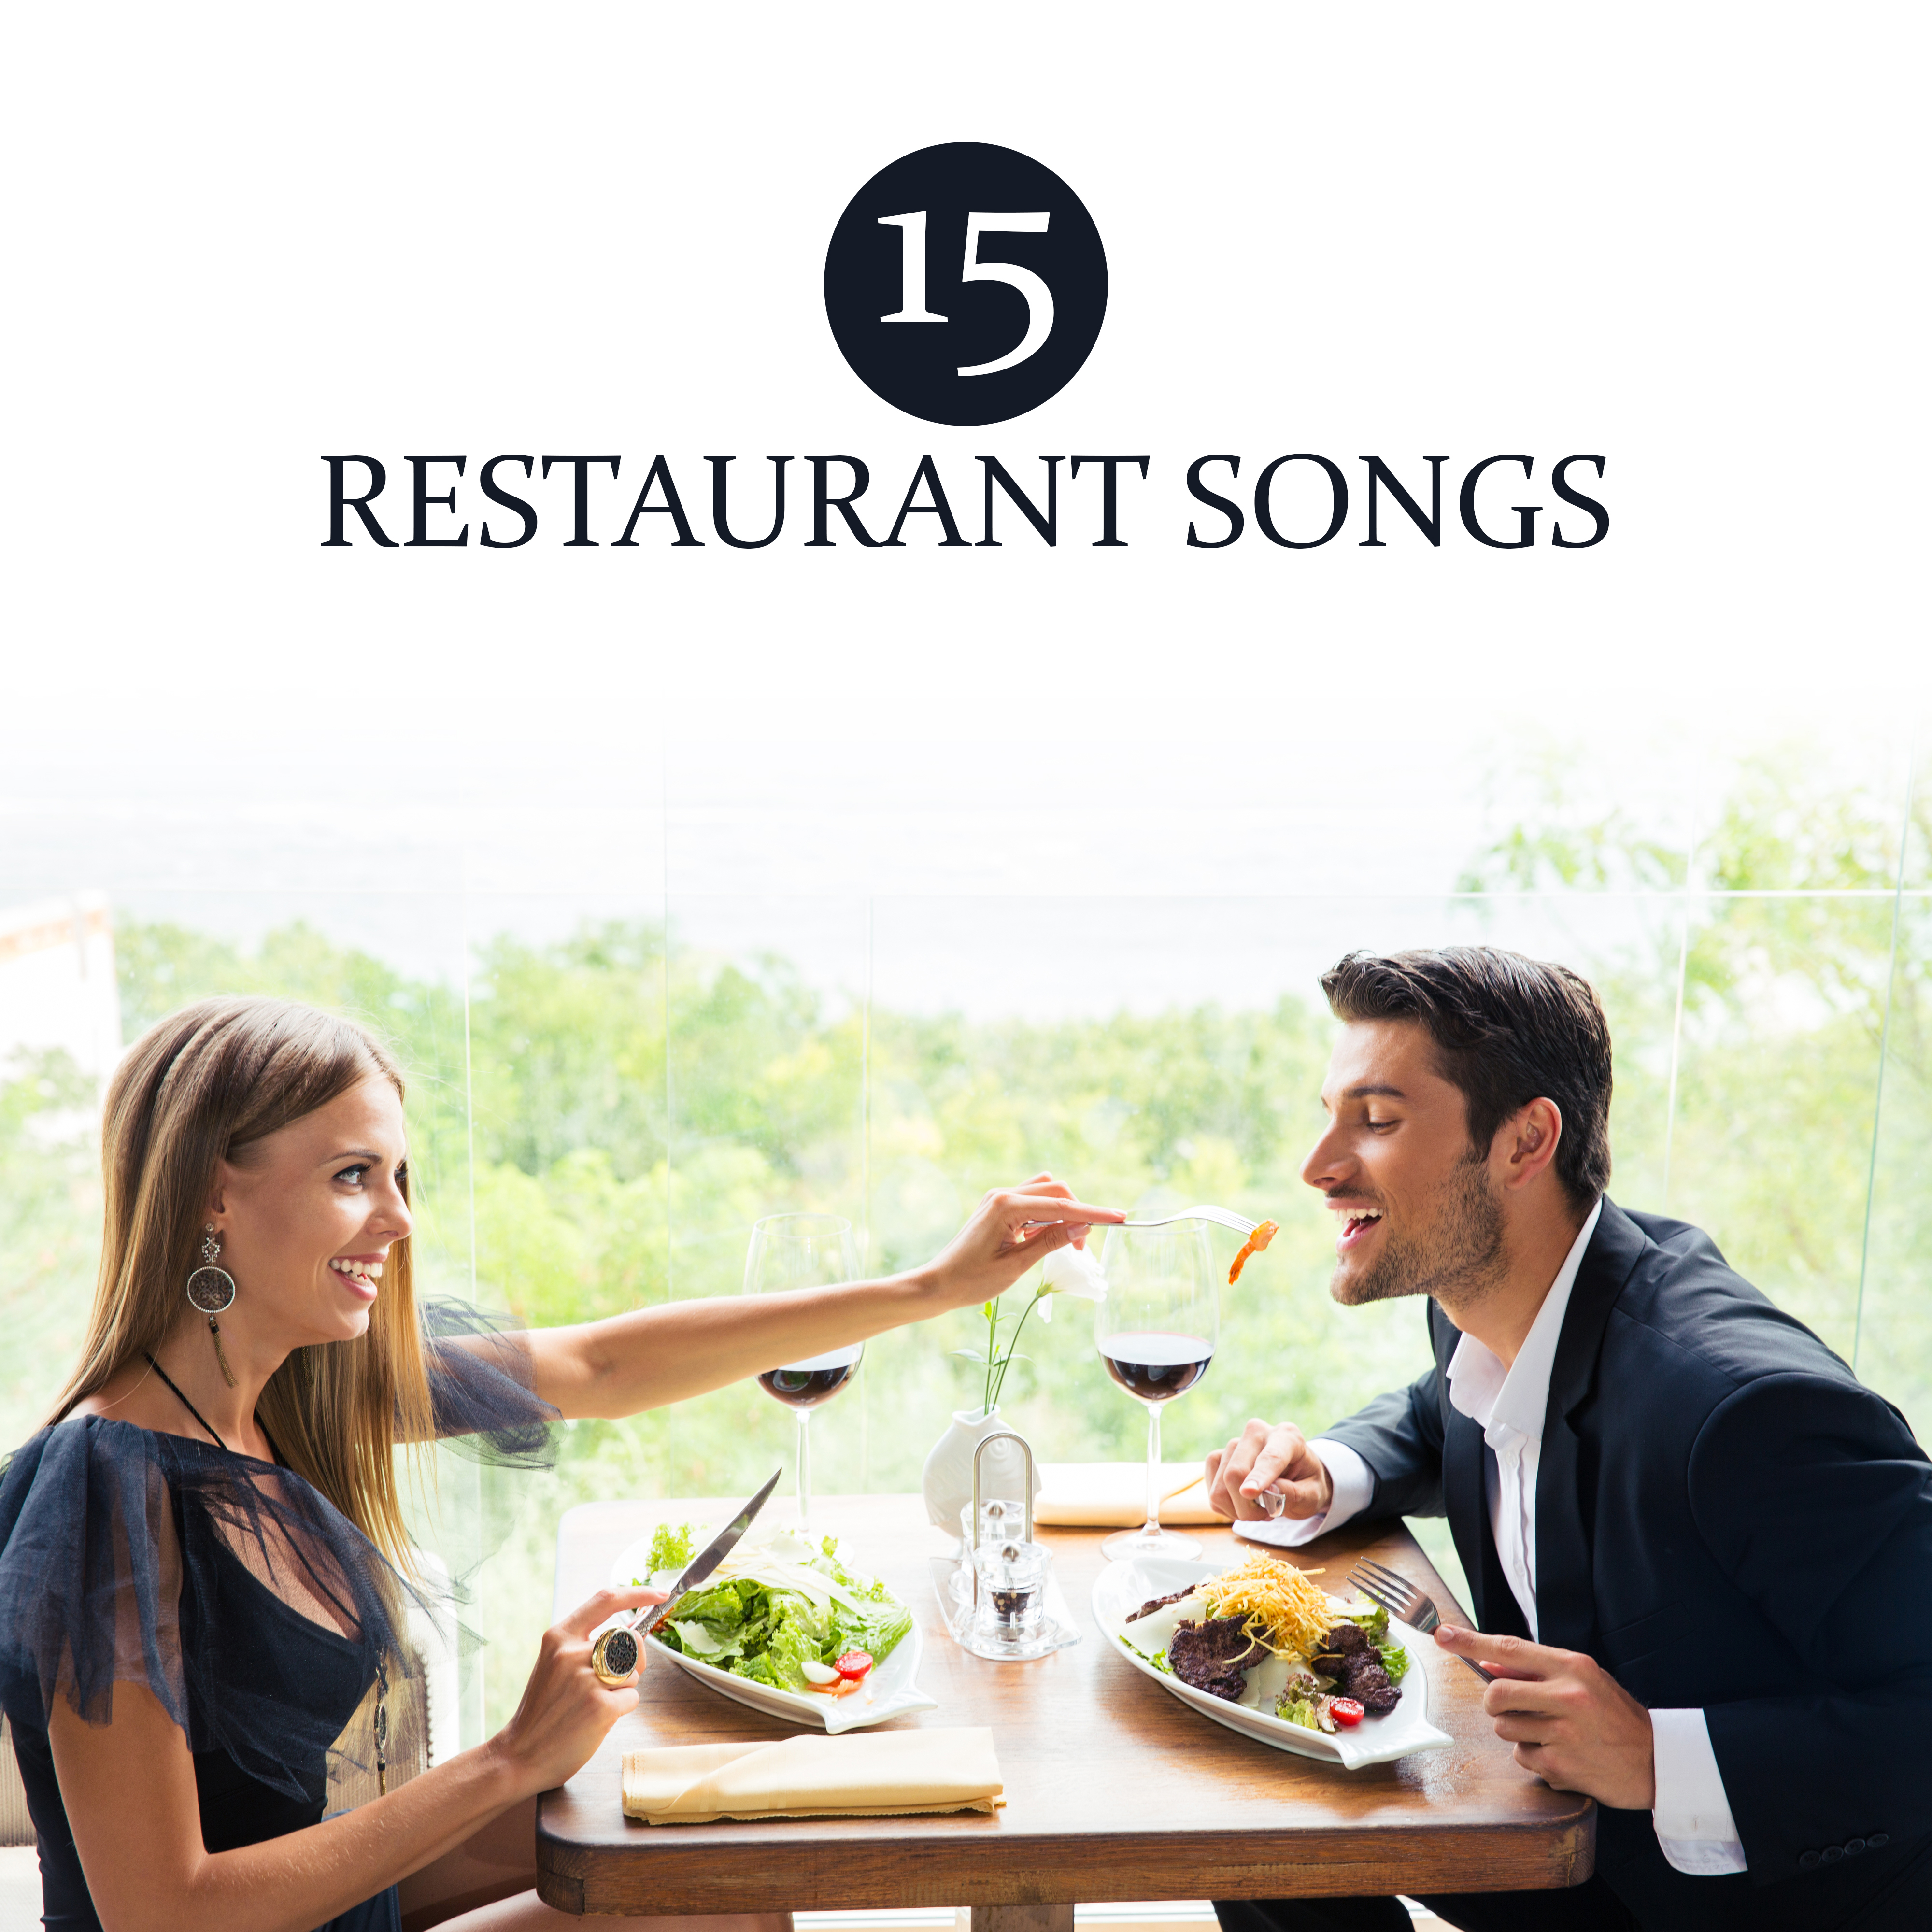 15 Restaurant Songs